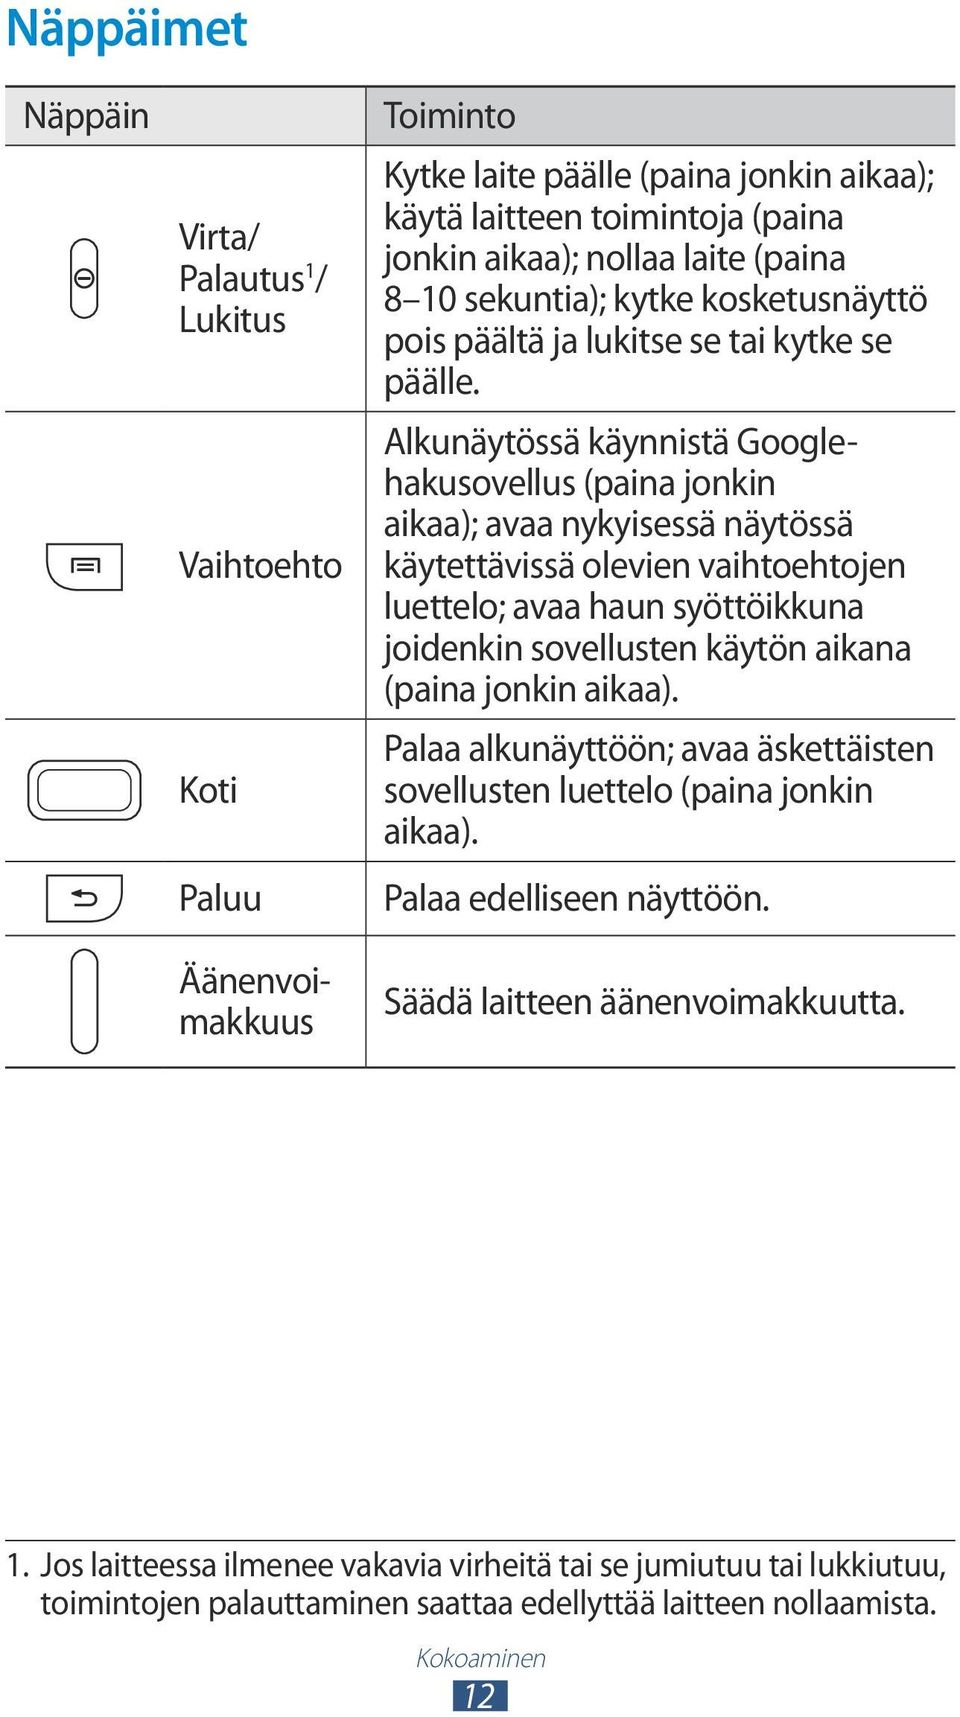 Alkunäytössä käynnistä Googlehakusovellus (paina jonkin aikaa); avaa nykyisessä näytössä käytettävissä olevien vaihtoehtojen luettelo; avaa haun syöttöikkuna joidenkin sovellusten käytön aikana